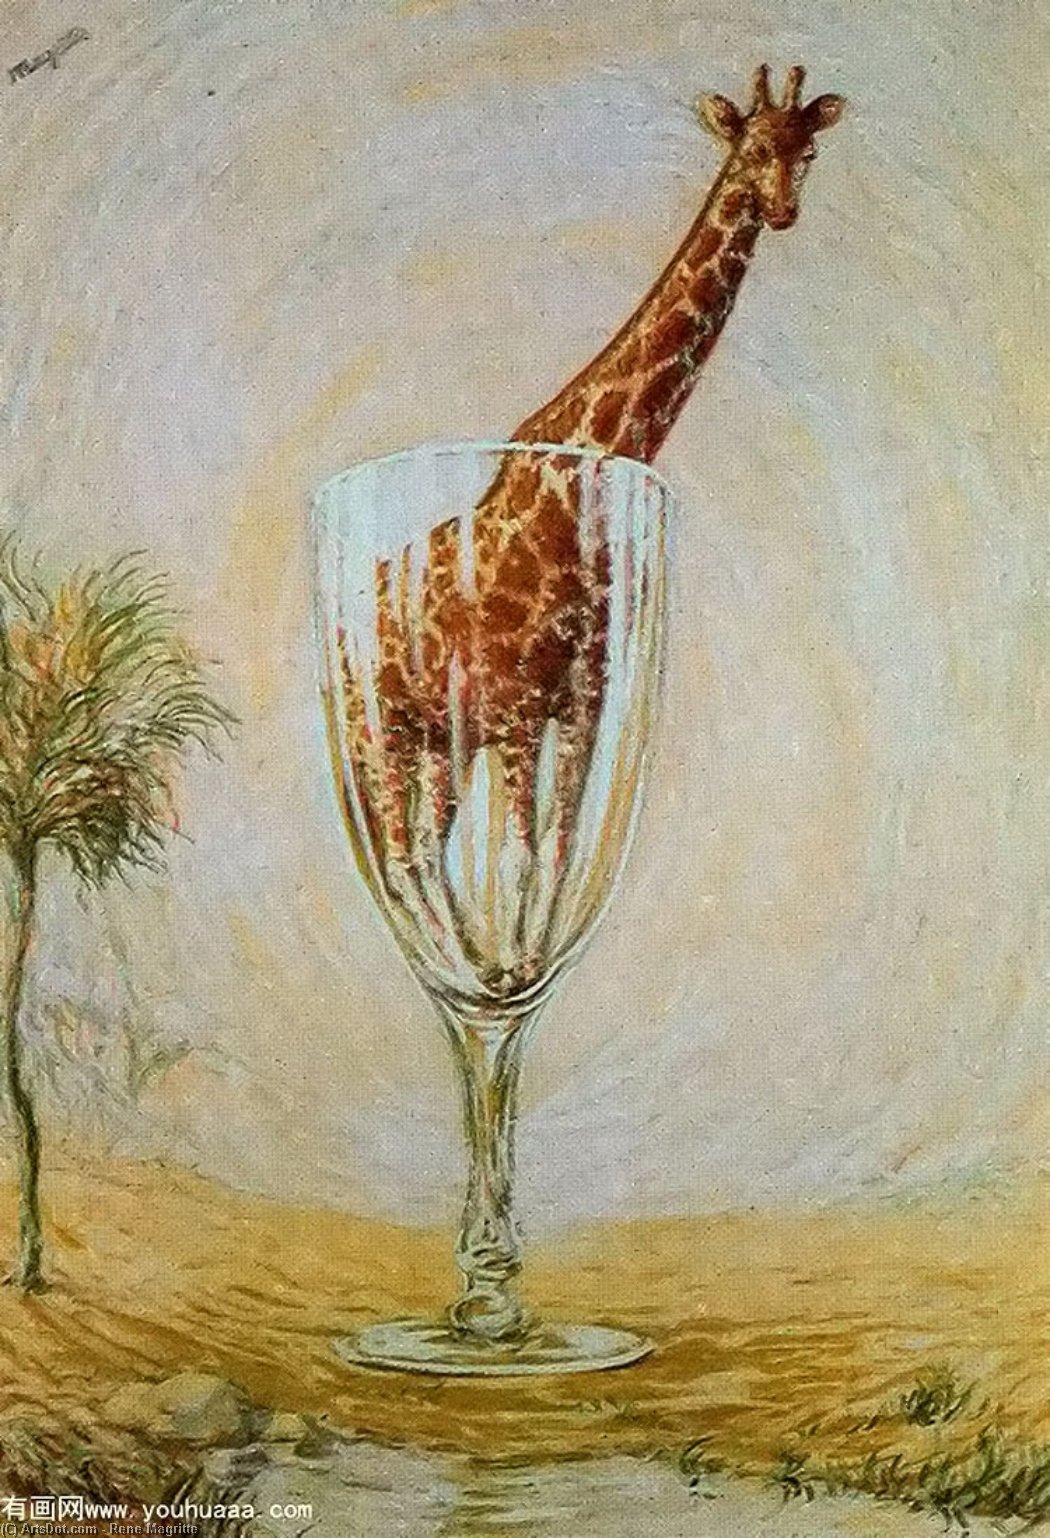 Wikioo.org - Bách khoa toàn thư về mỹ thuật - Vẽ tranh, Tác phẩm nghệ thuật Rene Magritte - The cut-glass bath